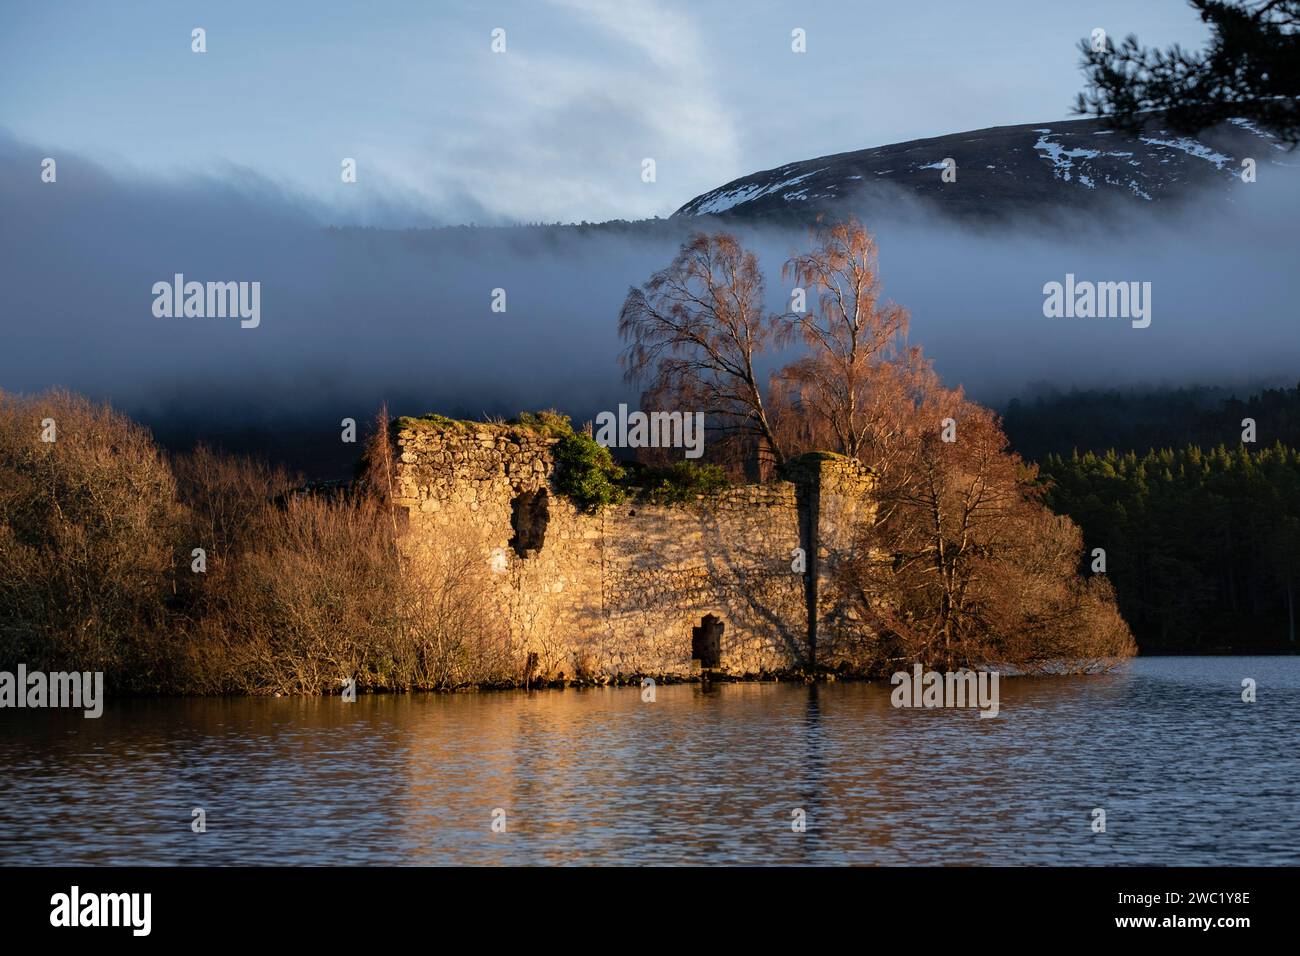 castillo del siglo XIII, Loch an Eilein, Parque Nacional de Cairngorms, Highlands, Escocia, Reino Unido Foto Stock